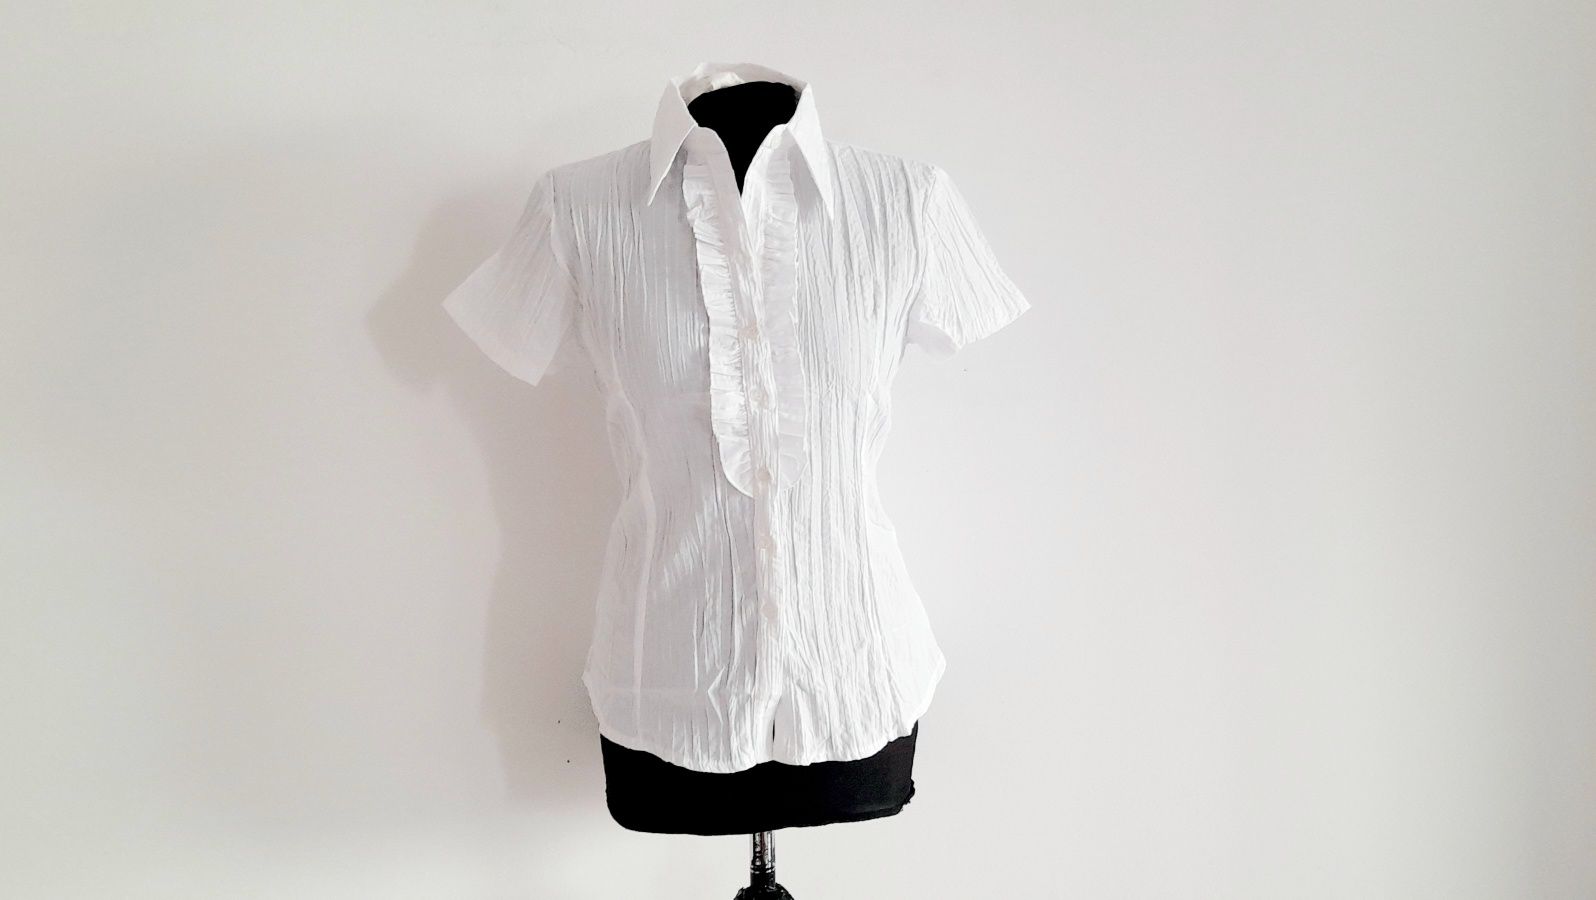 OKAZJA Biała bluzka koszula bawełna wiosna xl 42 xxl